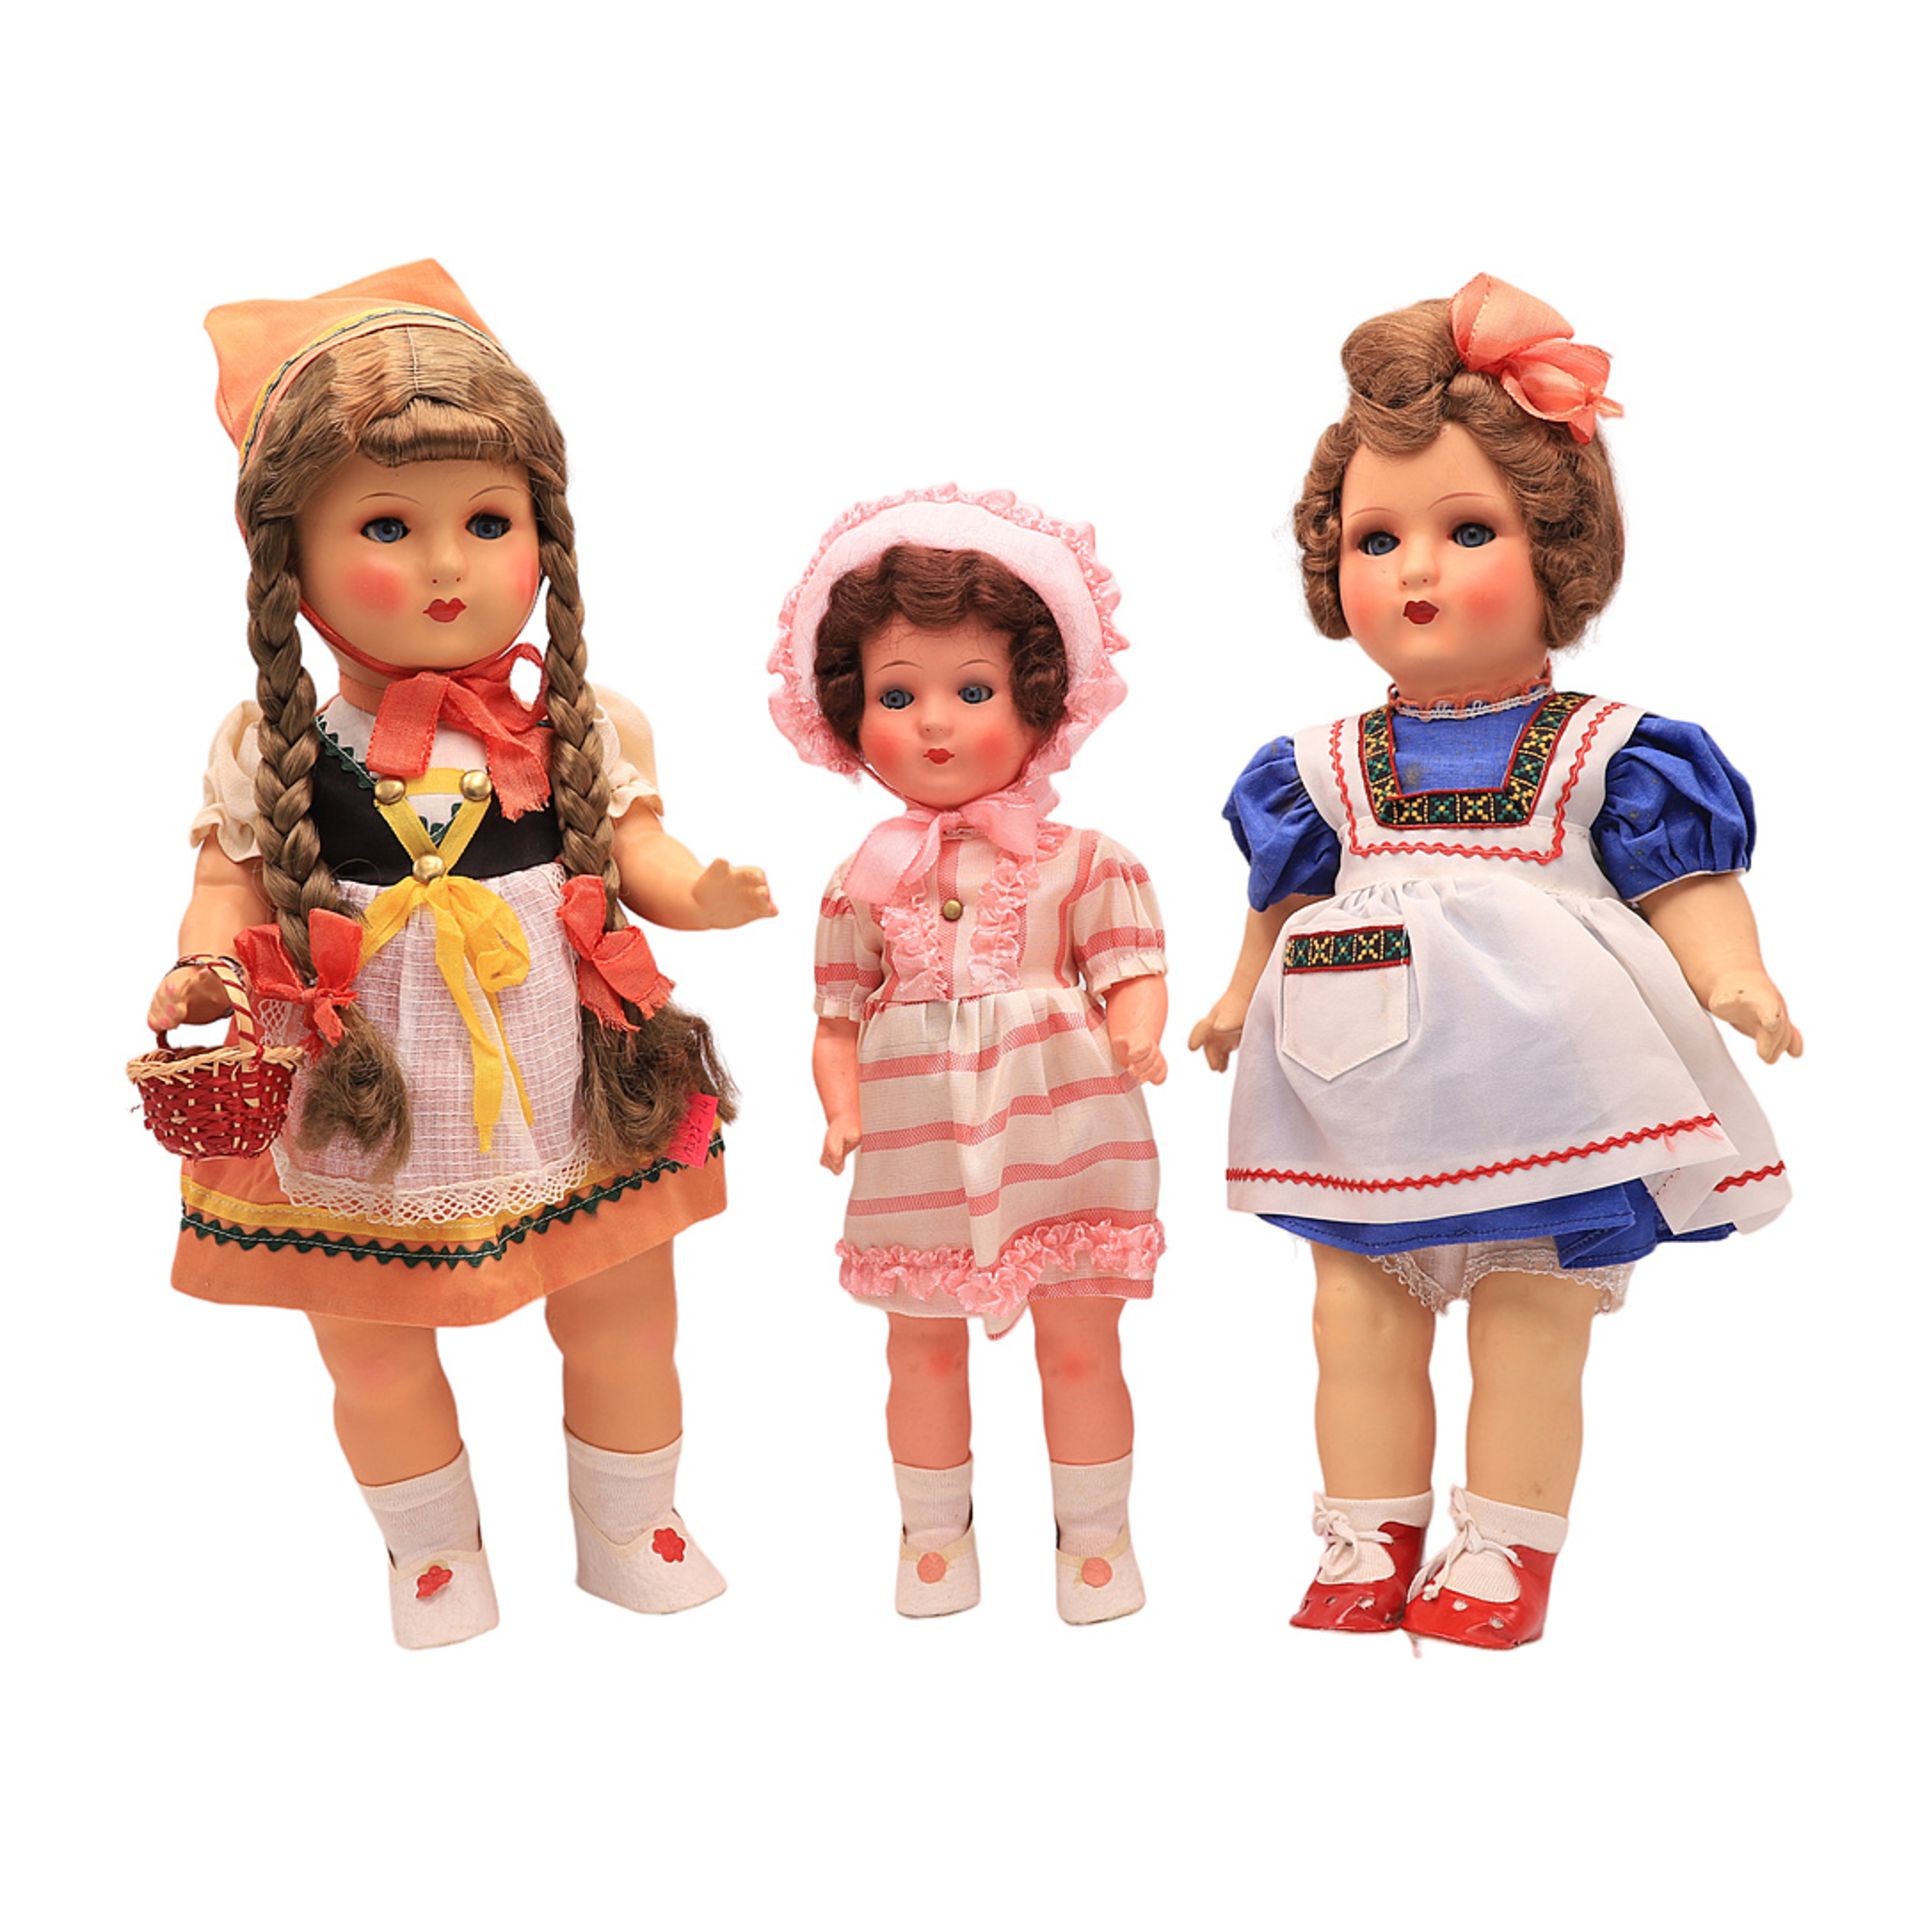 Drei  Puppen in traditionellen Kleidern